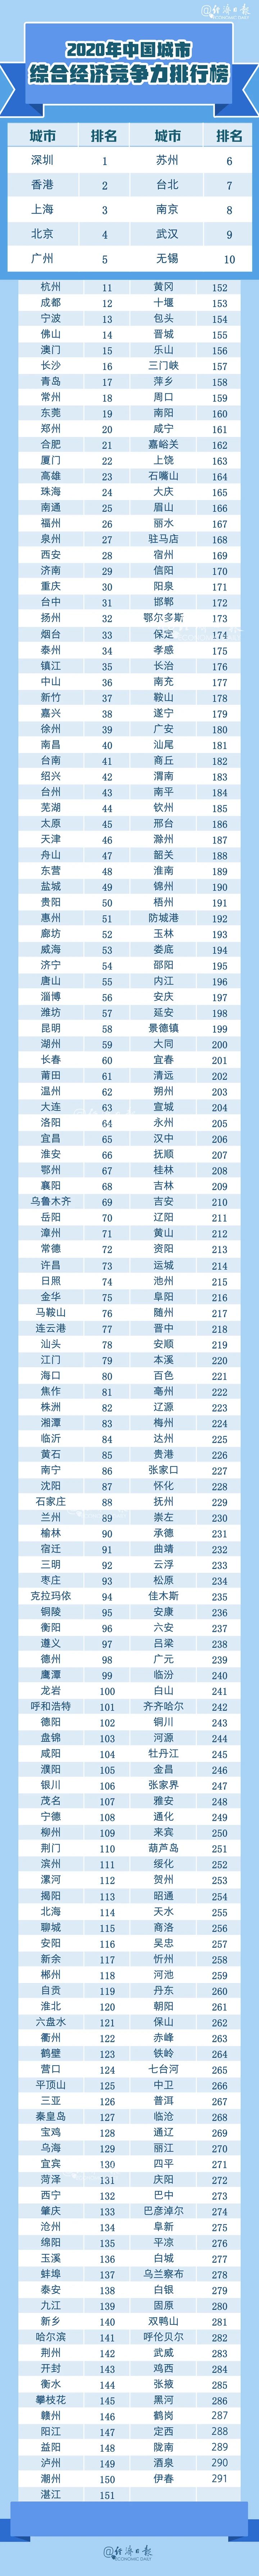 中国城市竞争力排名2020